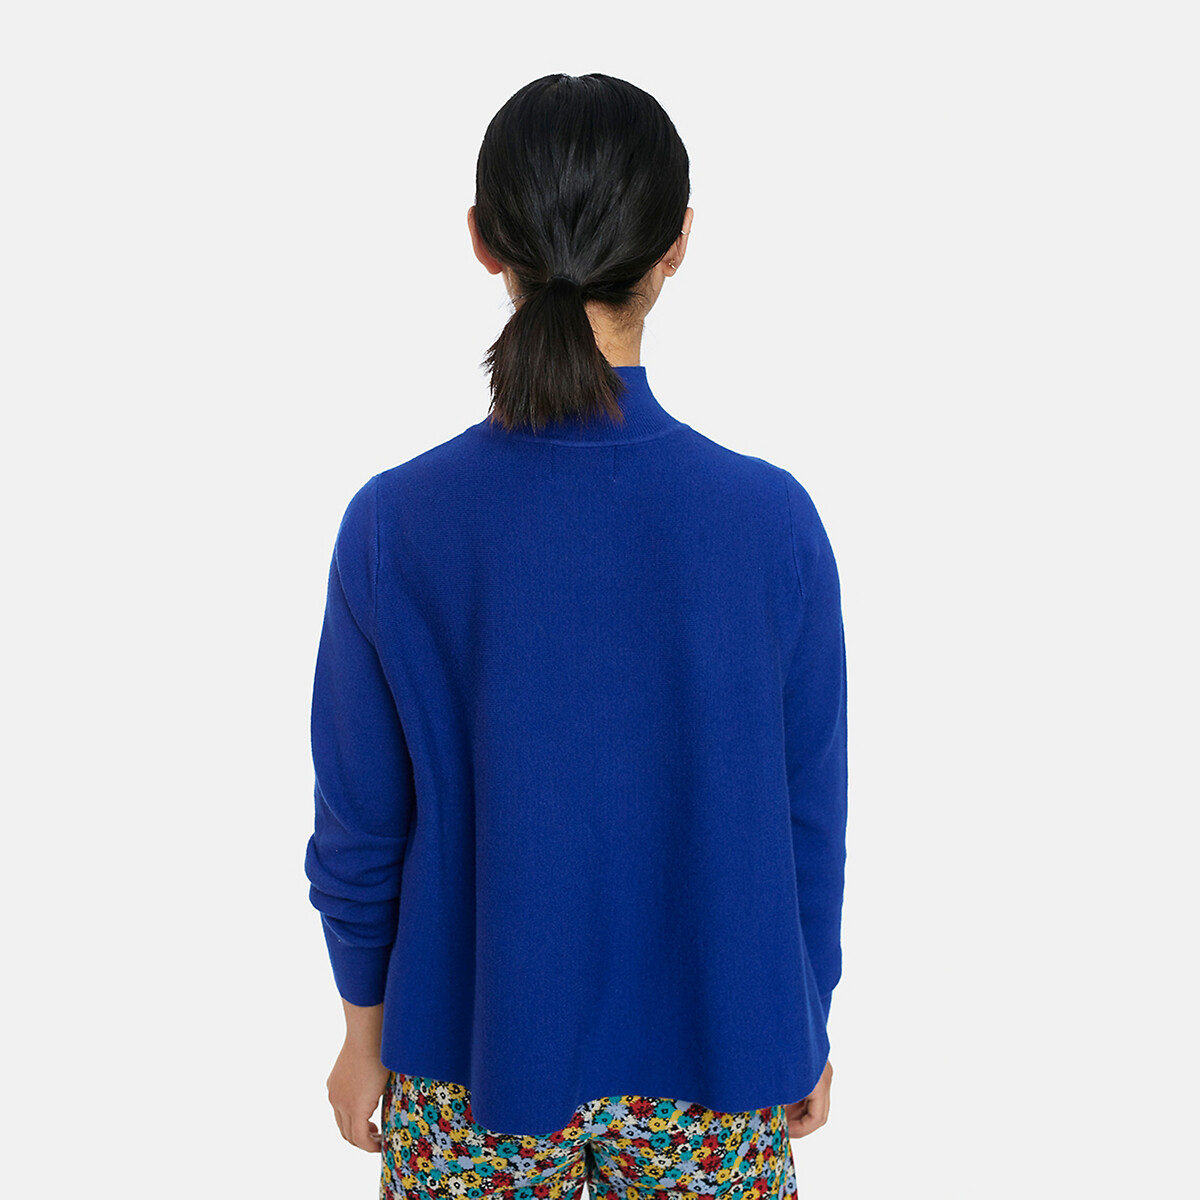 Пуловер La Redoute С воротником-стойкой широкий покрой S синий, размер S - фото 3